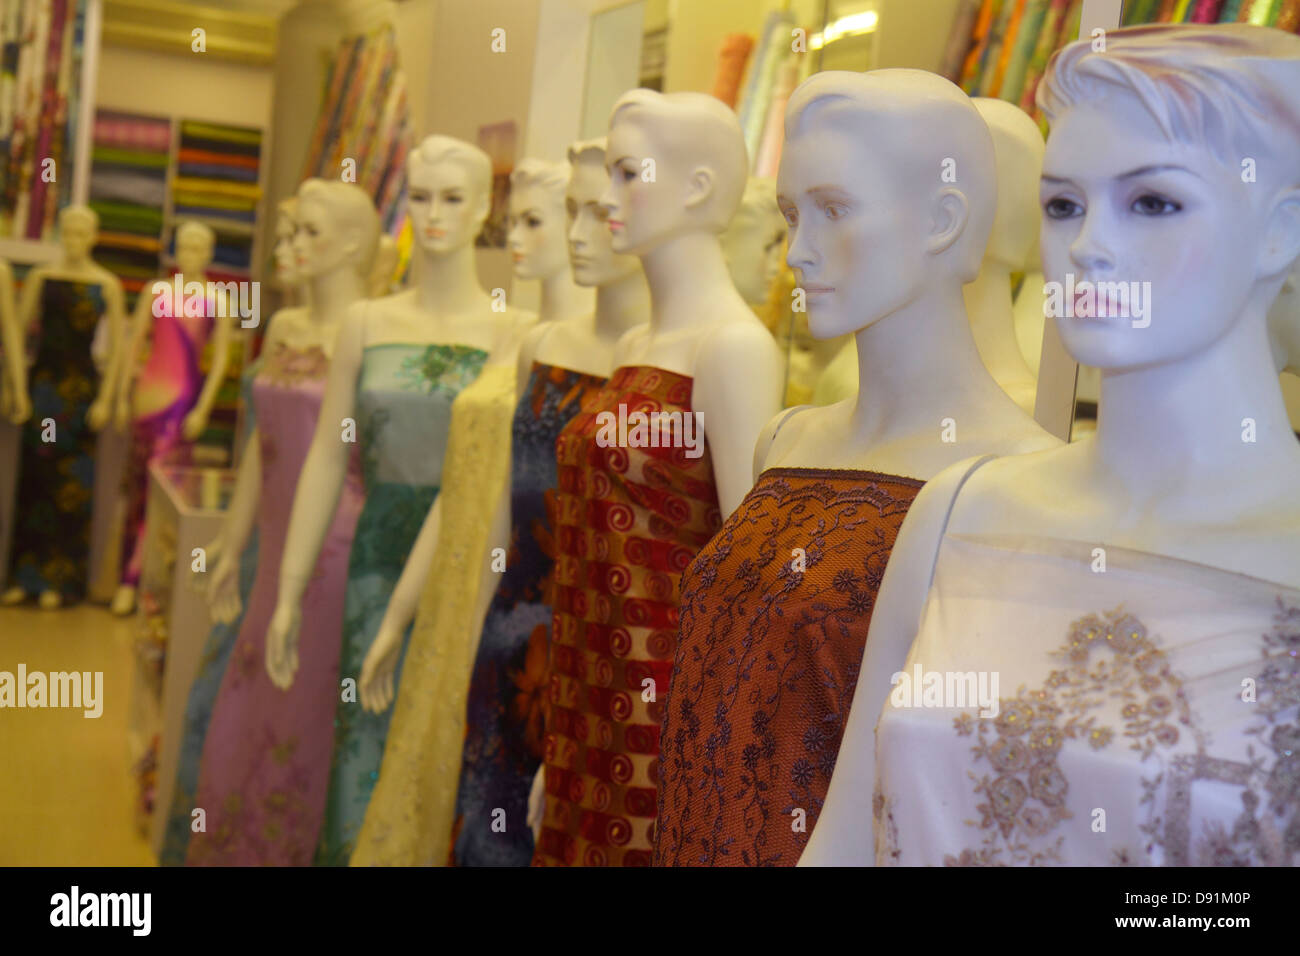 Singapur, Kampong Glam, Muslim Quarter, Arab Street, Textil, Händler, Stoff, für Schaufensterverkauf weiblich, Mannequins, Kleider, Shopping Shopper Shopper shoppen Shop sh Stockfoto